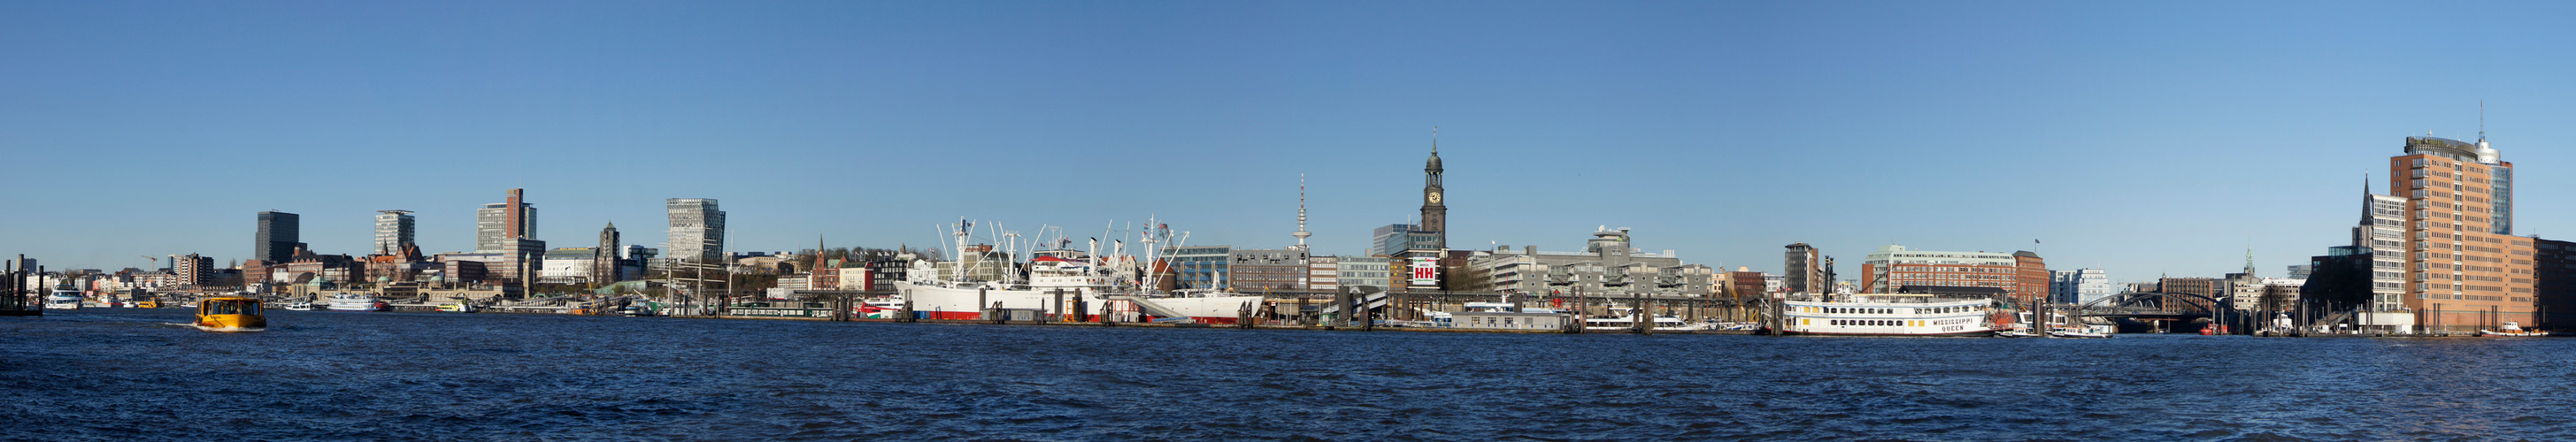 Mein Hamburg